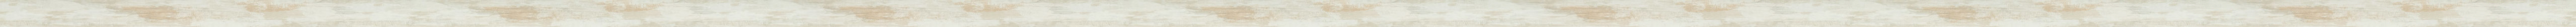 Λευκή ντεκαπέ κορνίζα με βάθος frame